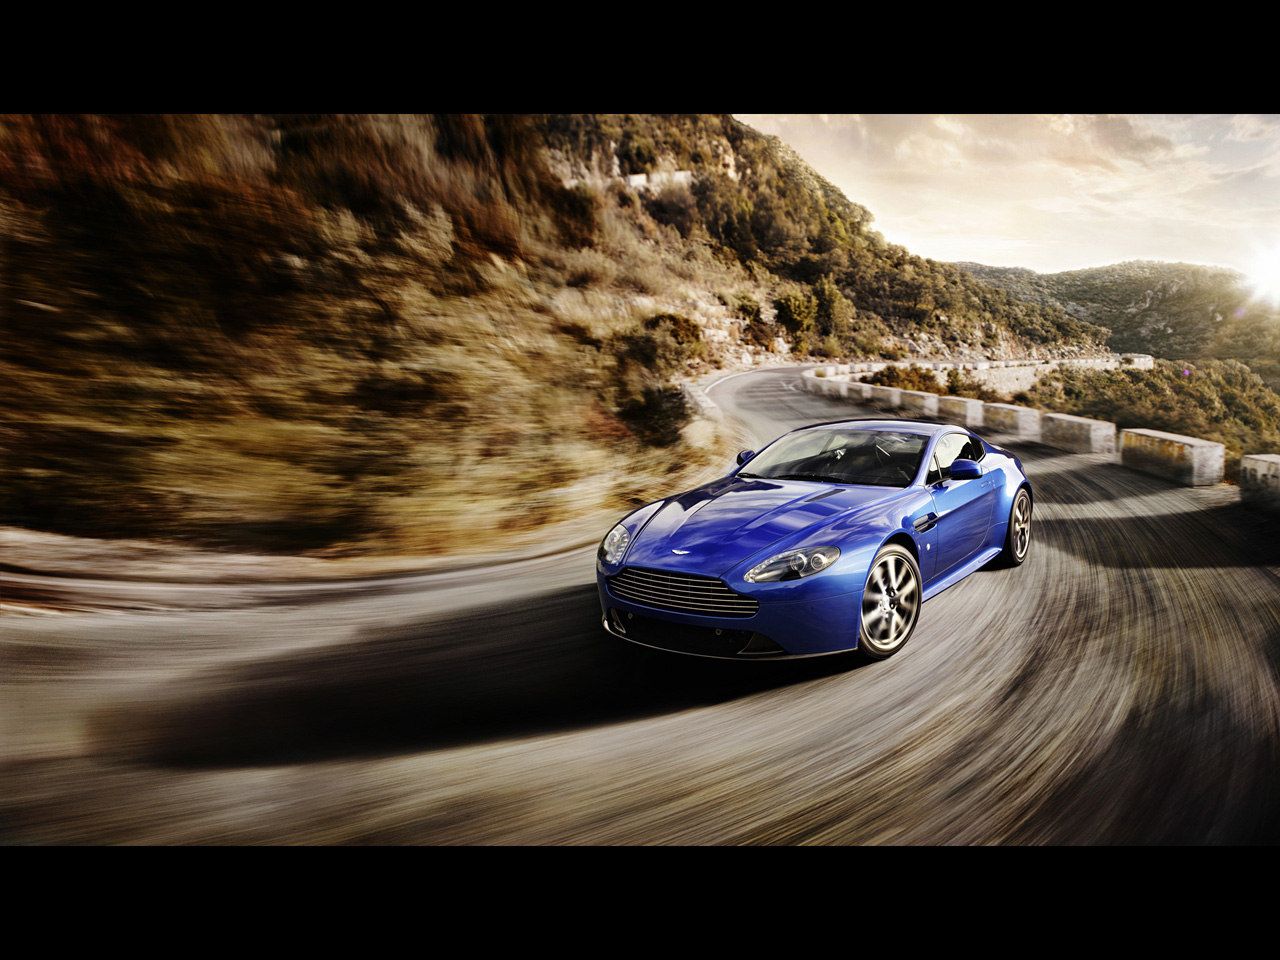 Télécharger des fonds d'écran Aston Martin Vantage HD